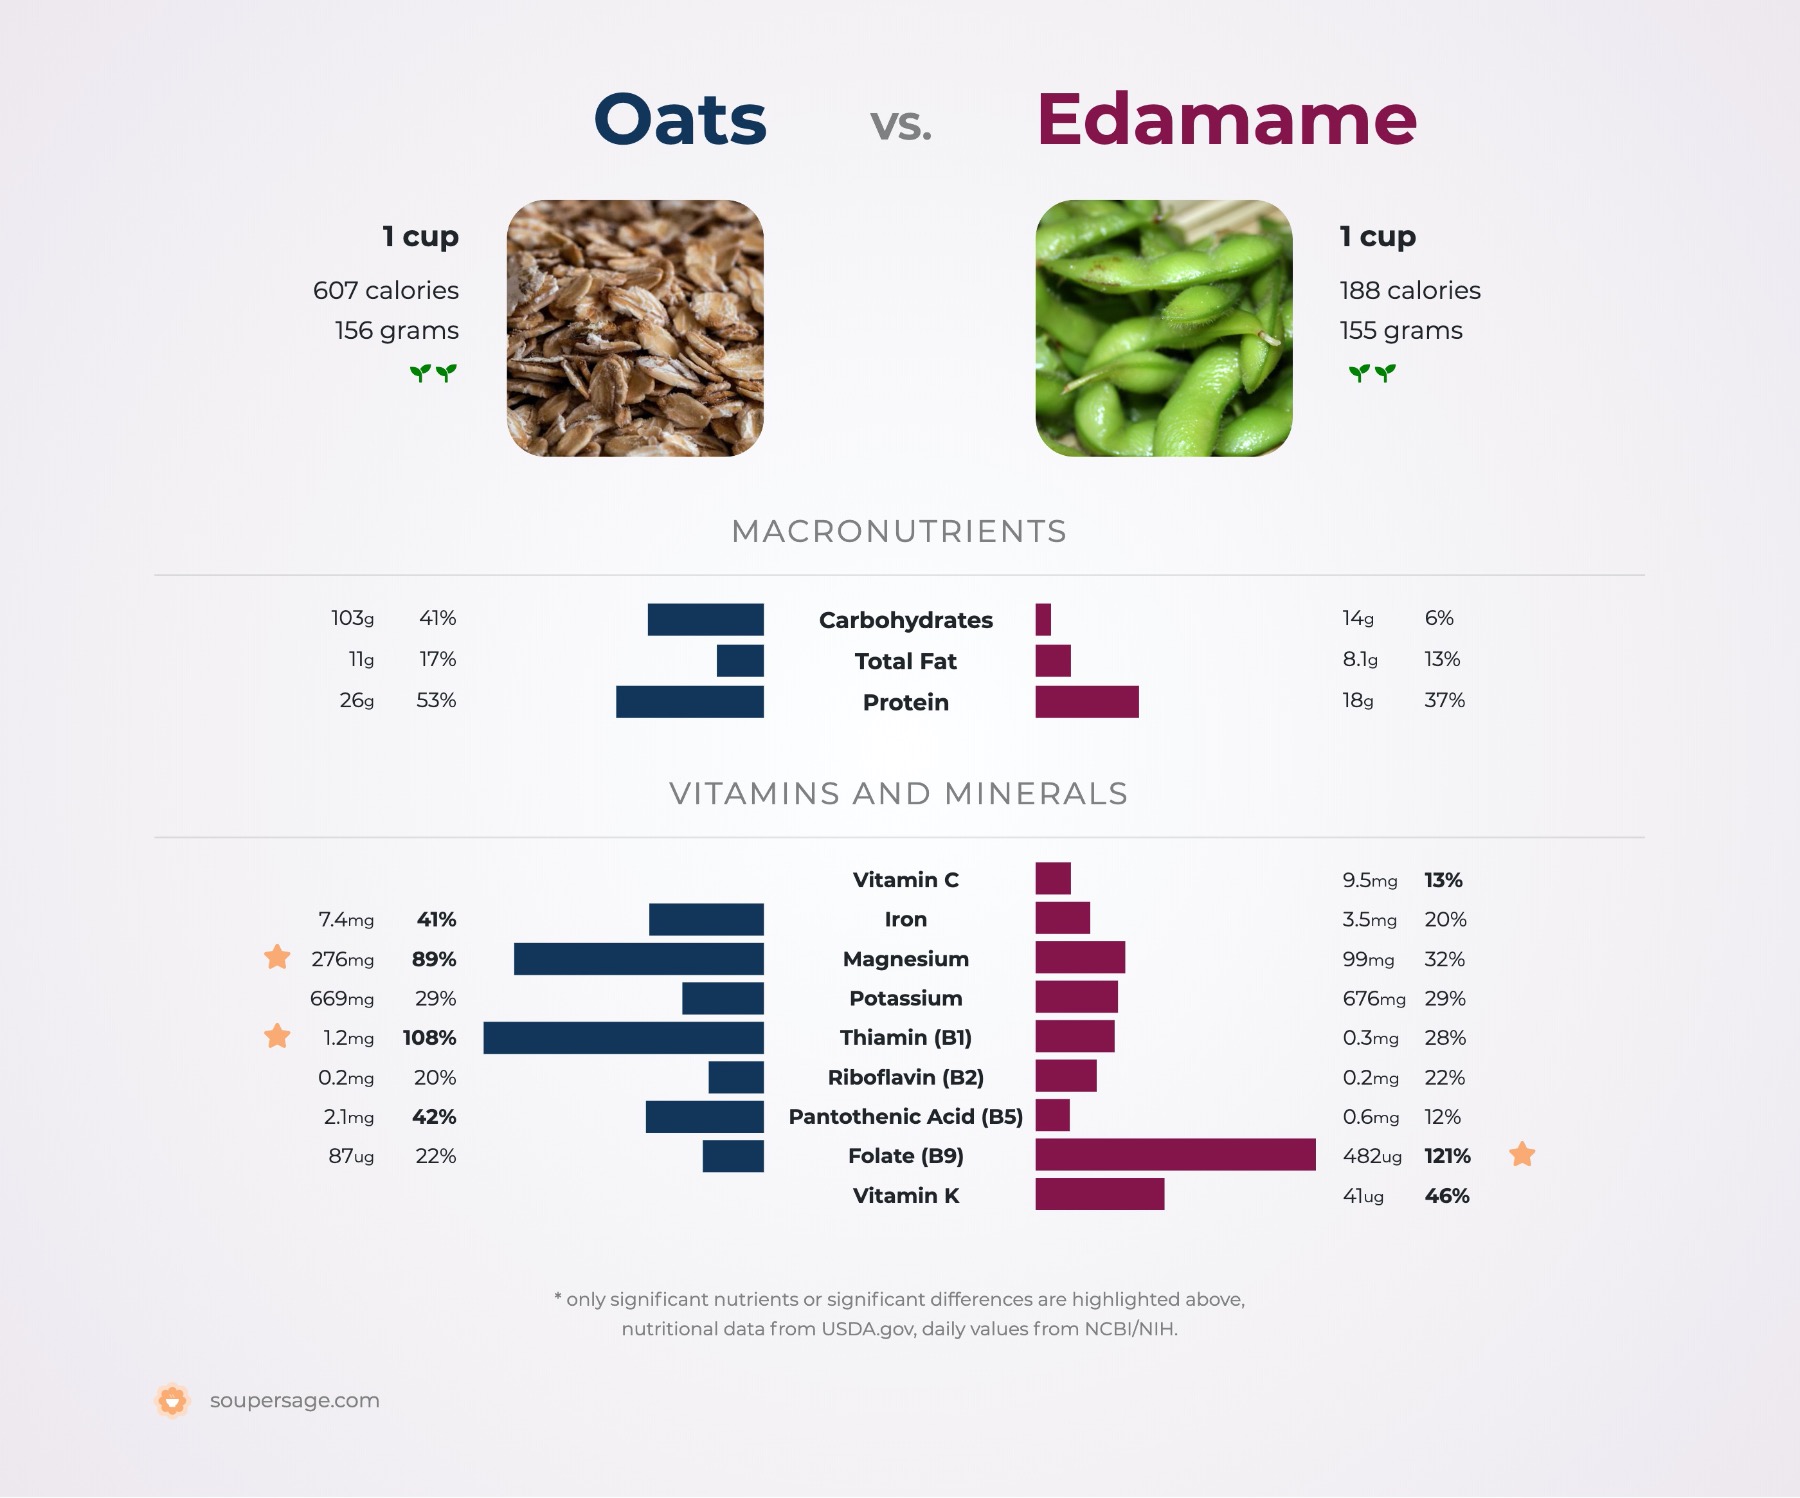 nutrition comparison of oats vs. edamame